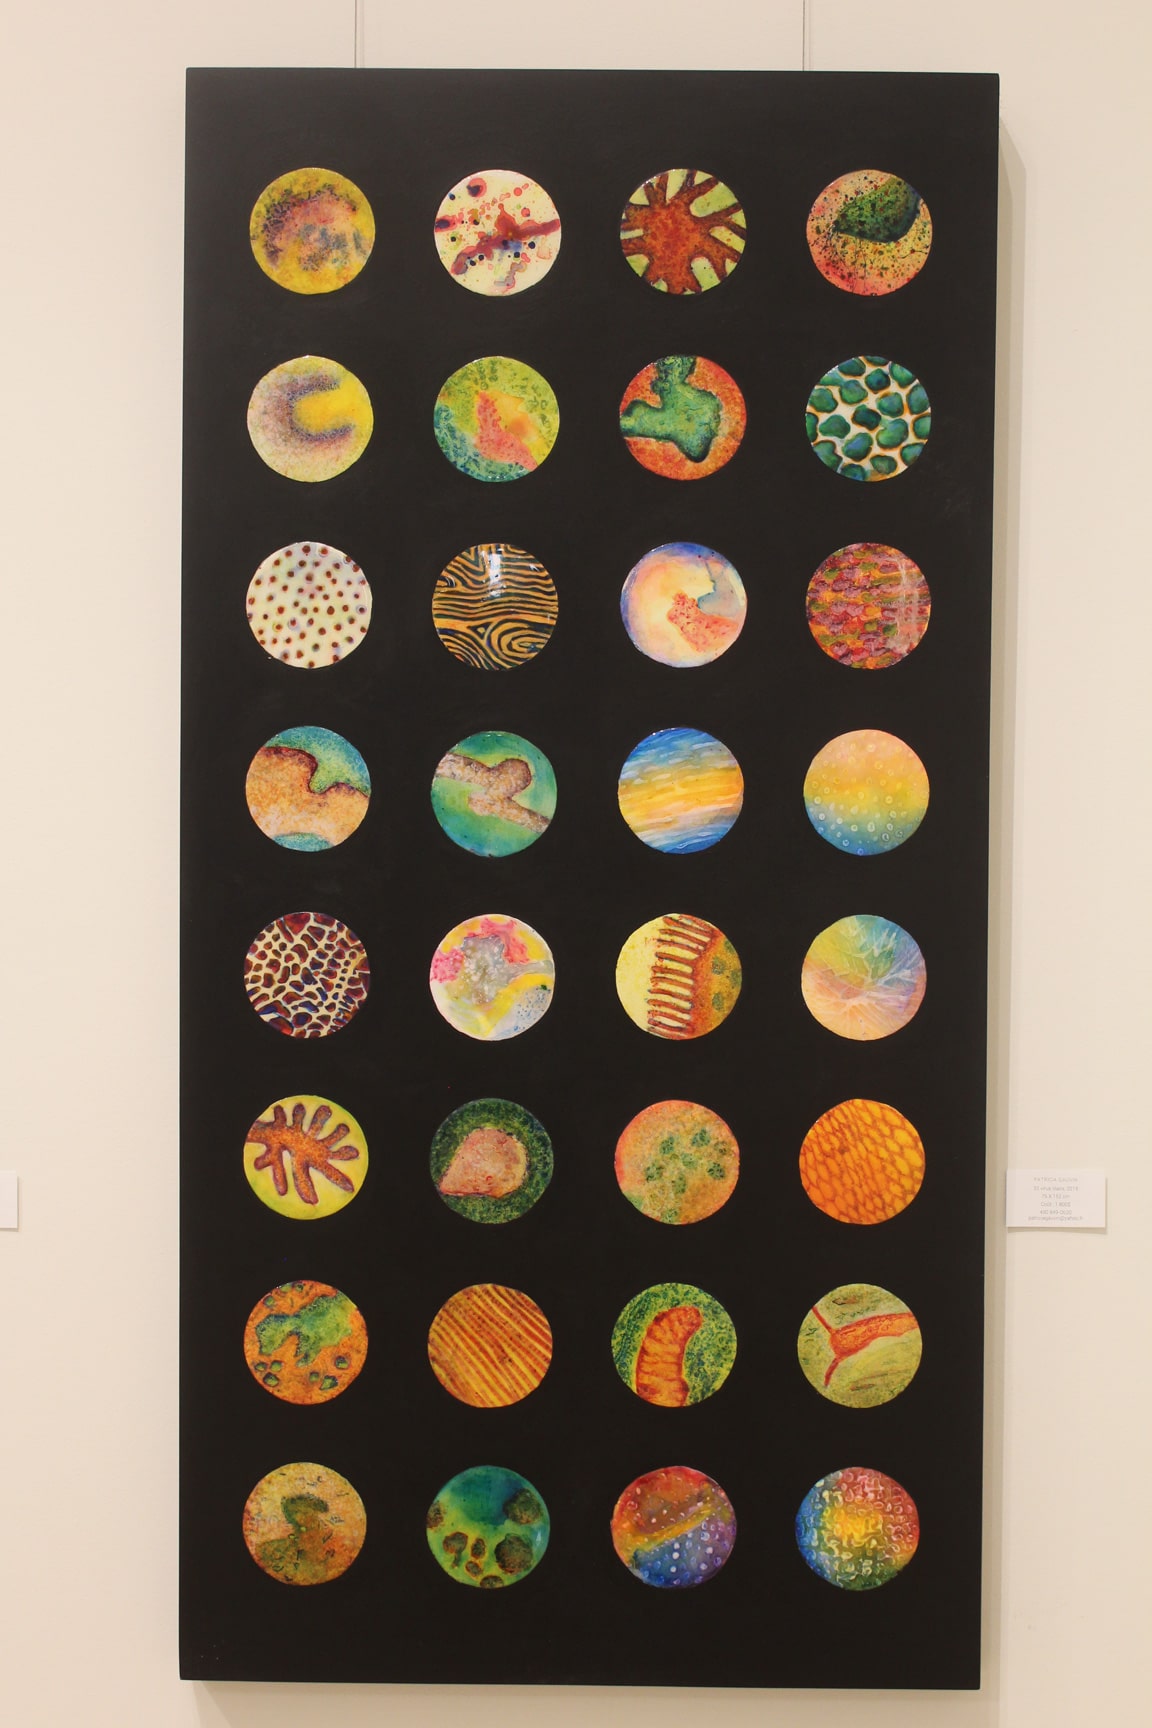 32 cercles de couleurs et textures différentes, présentés en 4 colonnes de 8 cercles.